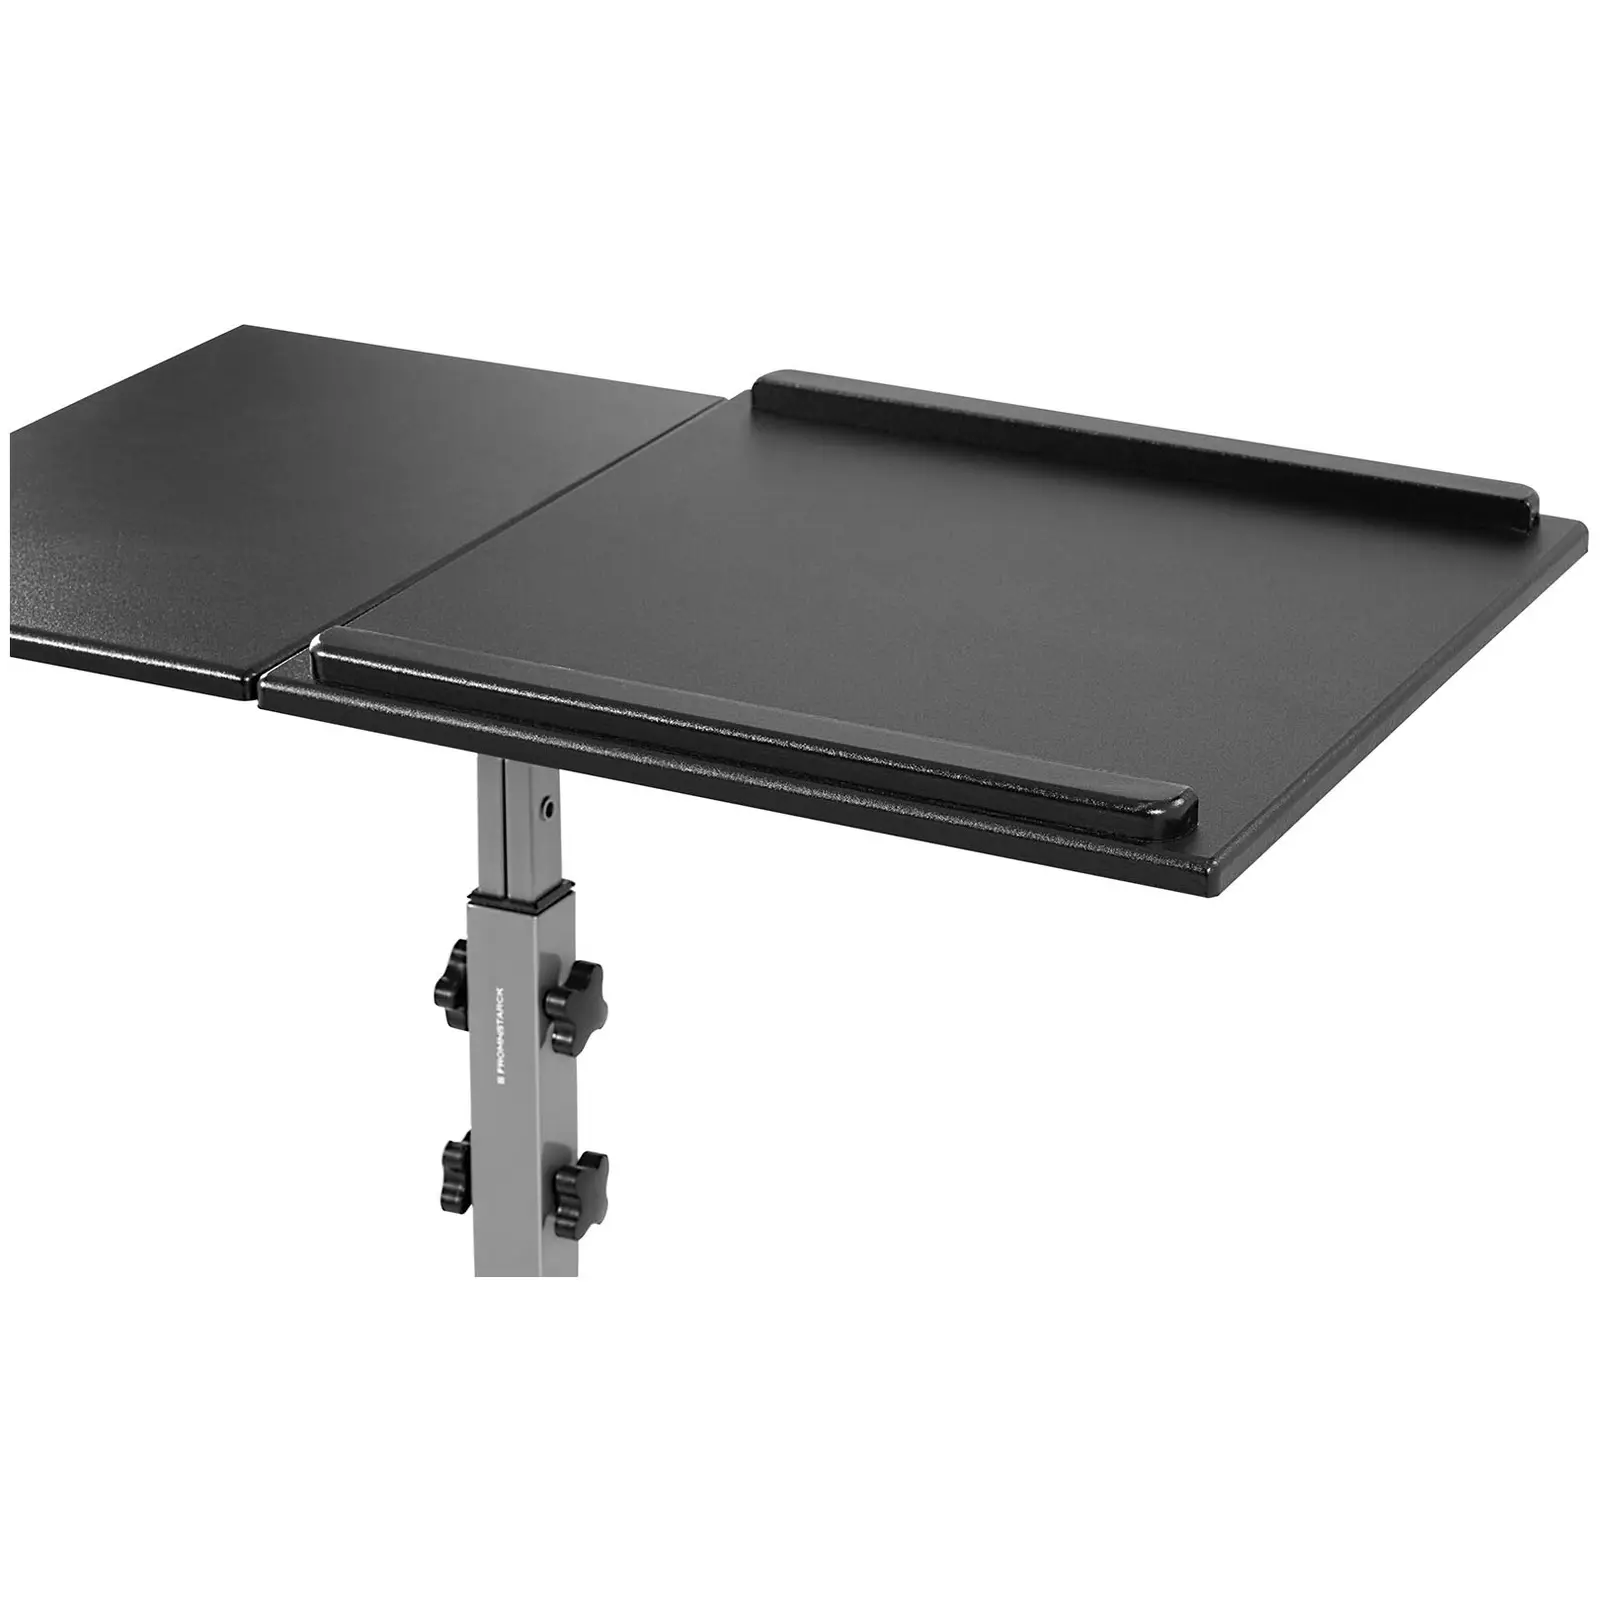 Table pour ordinateur portable - 45 x 75 cm - Inclinable de -35 - 30° - Hauteur : 770 - 870 mm